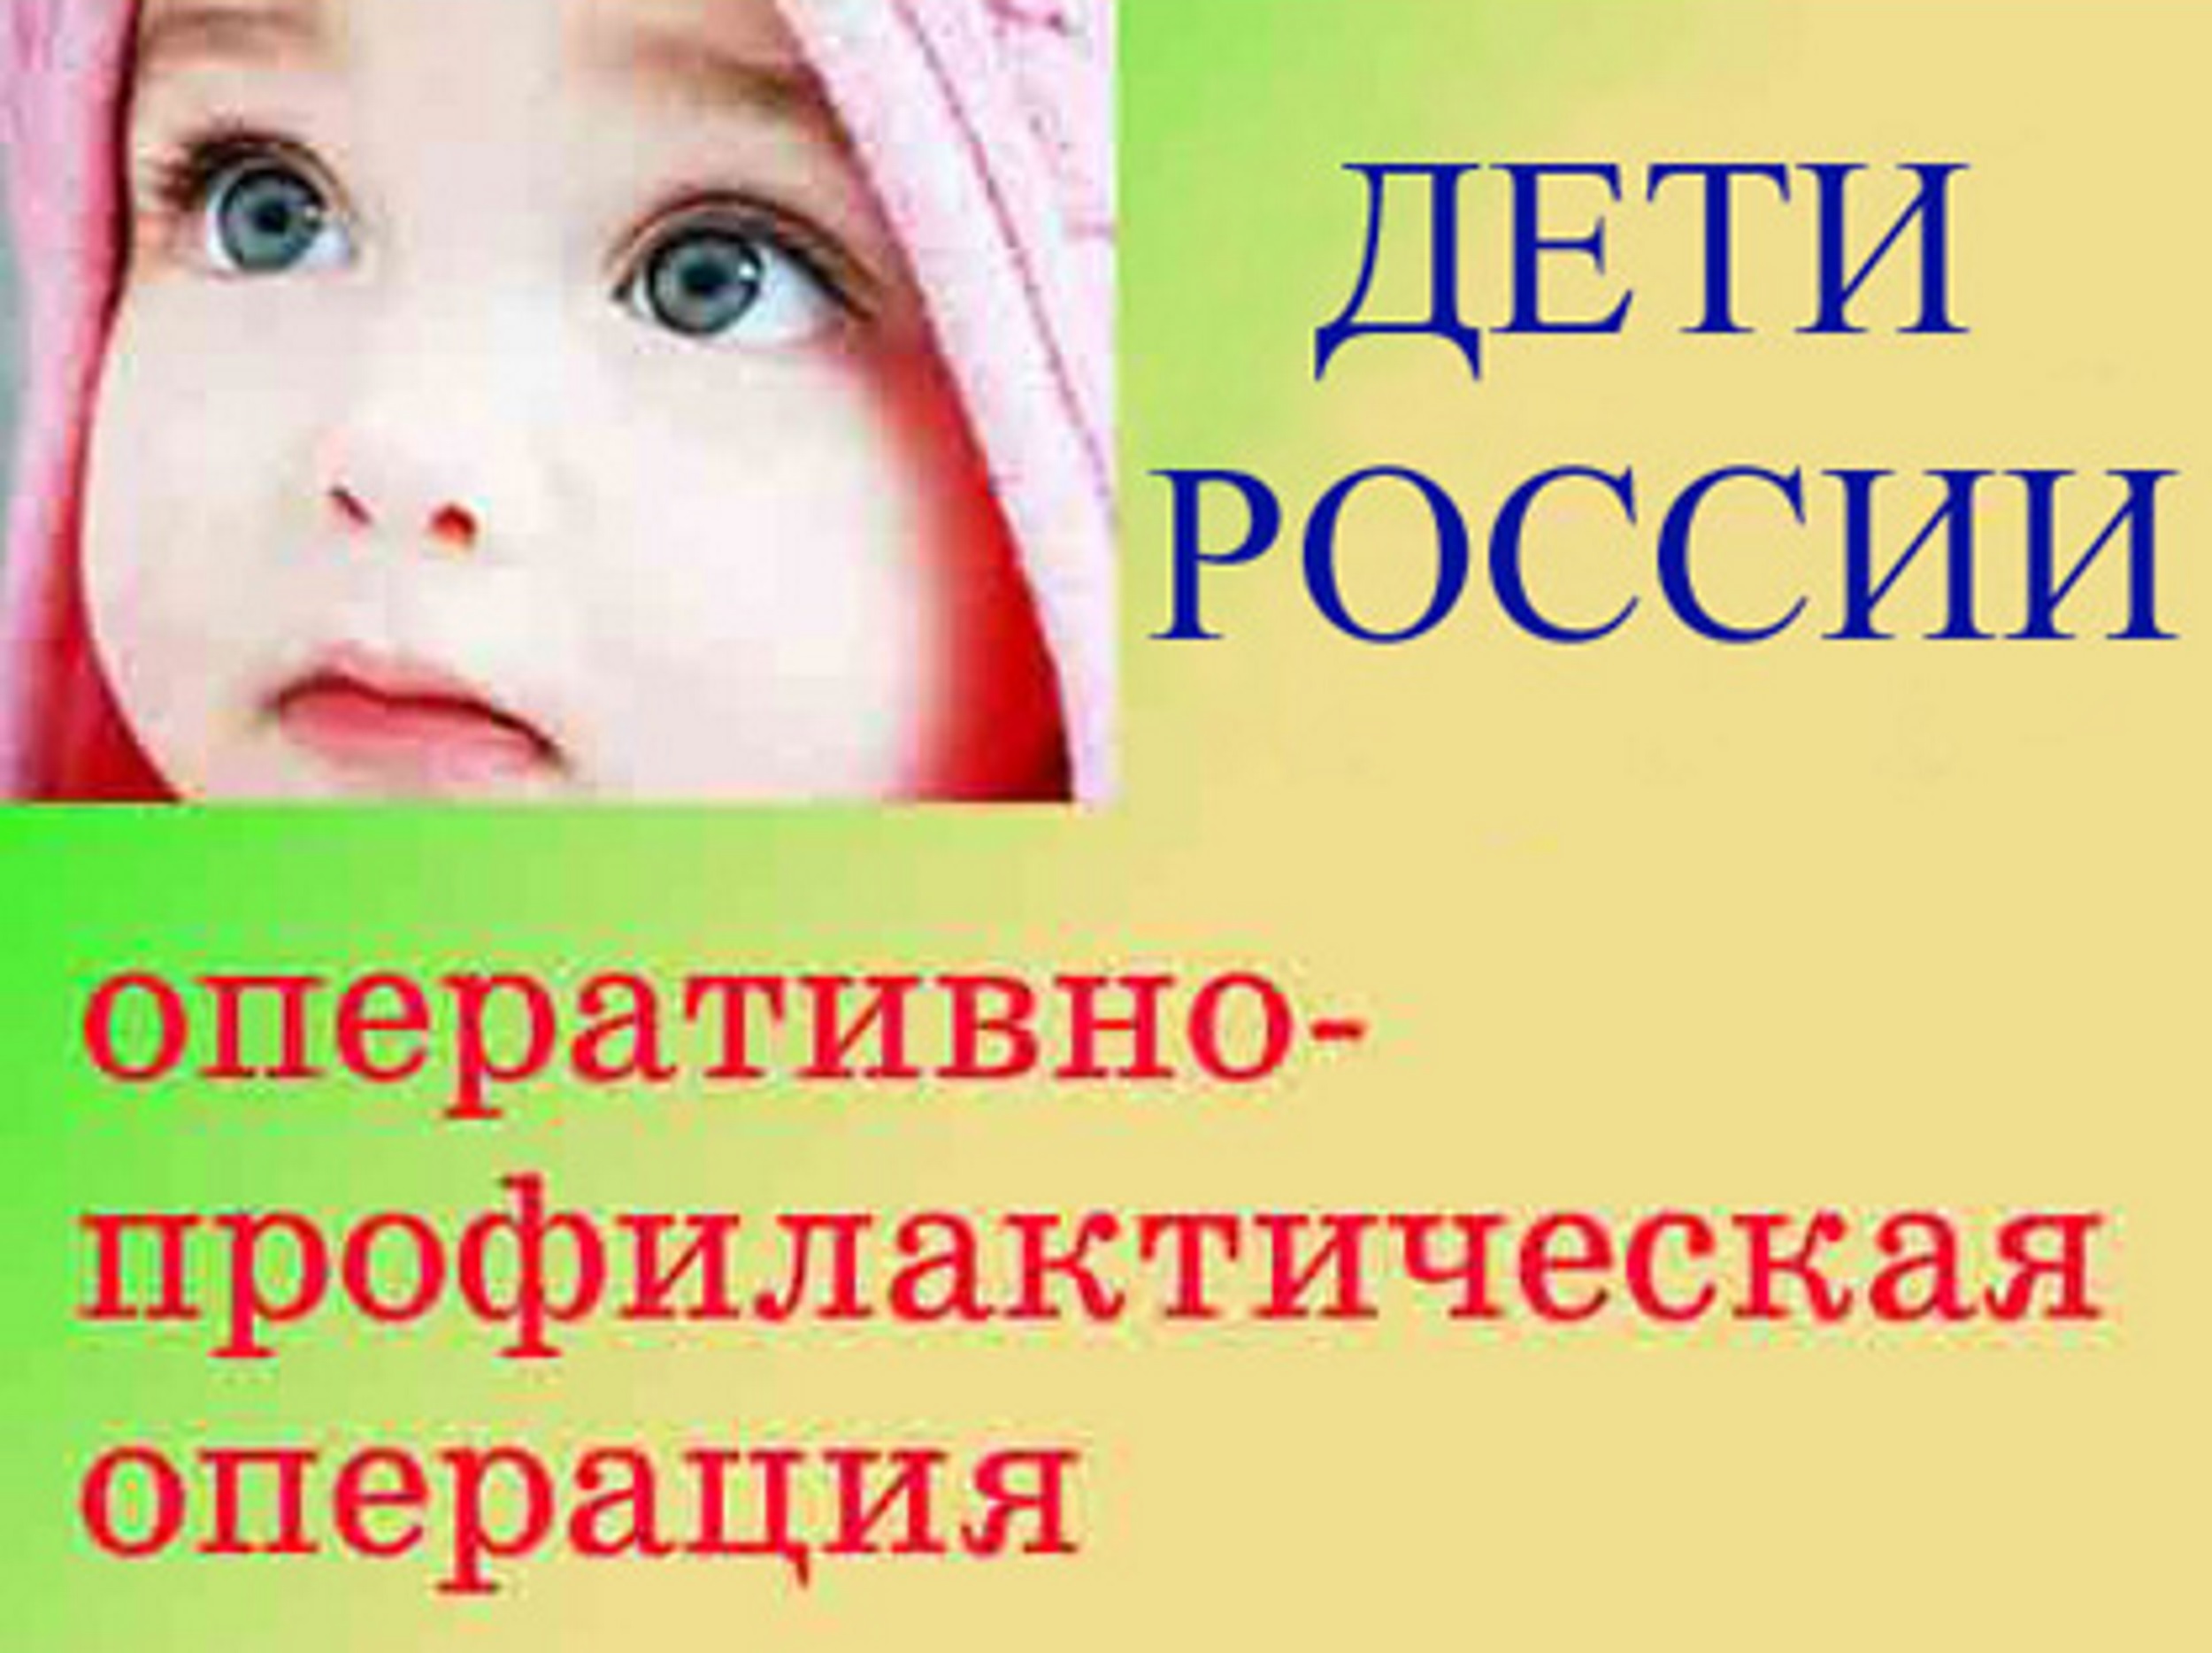 Профилактической операции дети россии